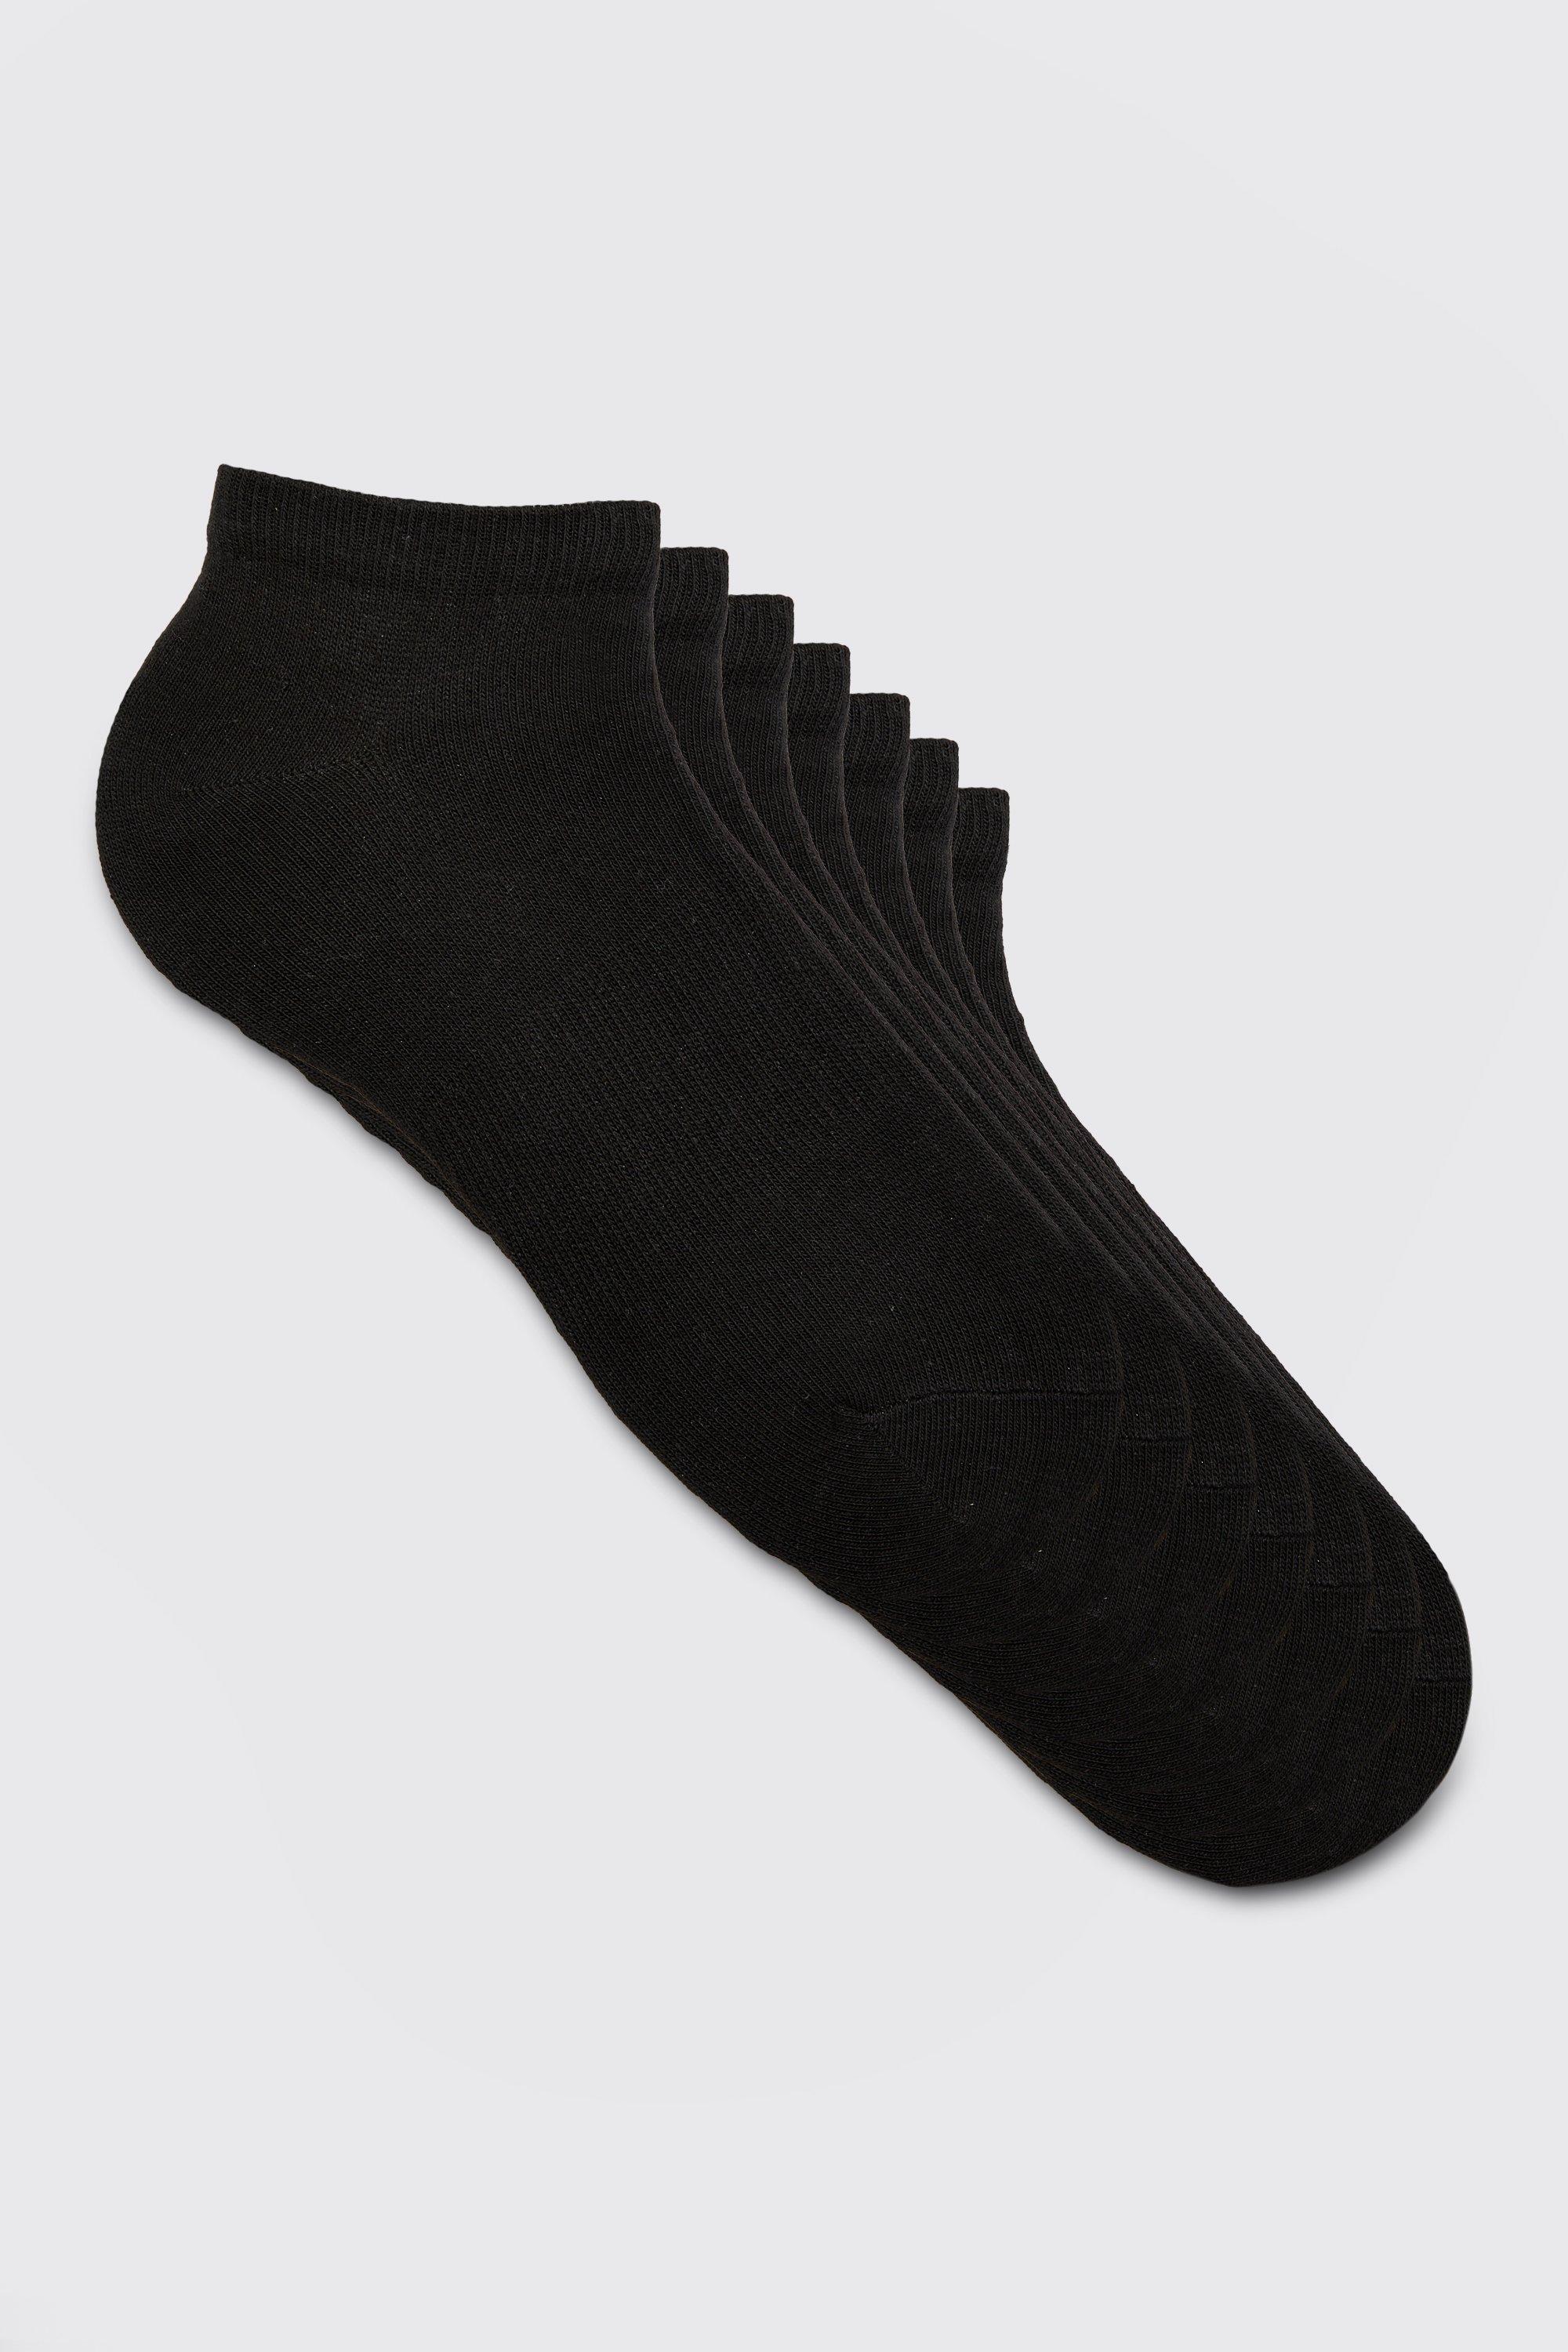 Mens Black 7 Pack Plain Trainer Socks, Black